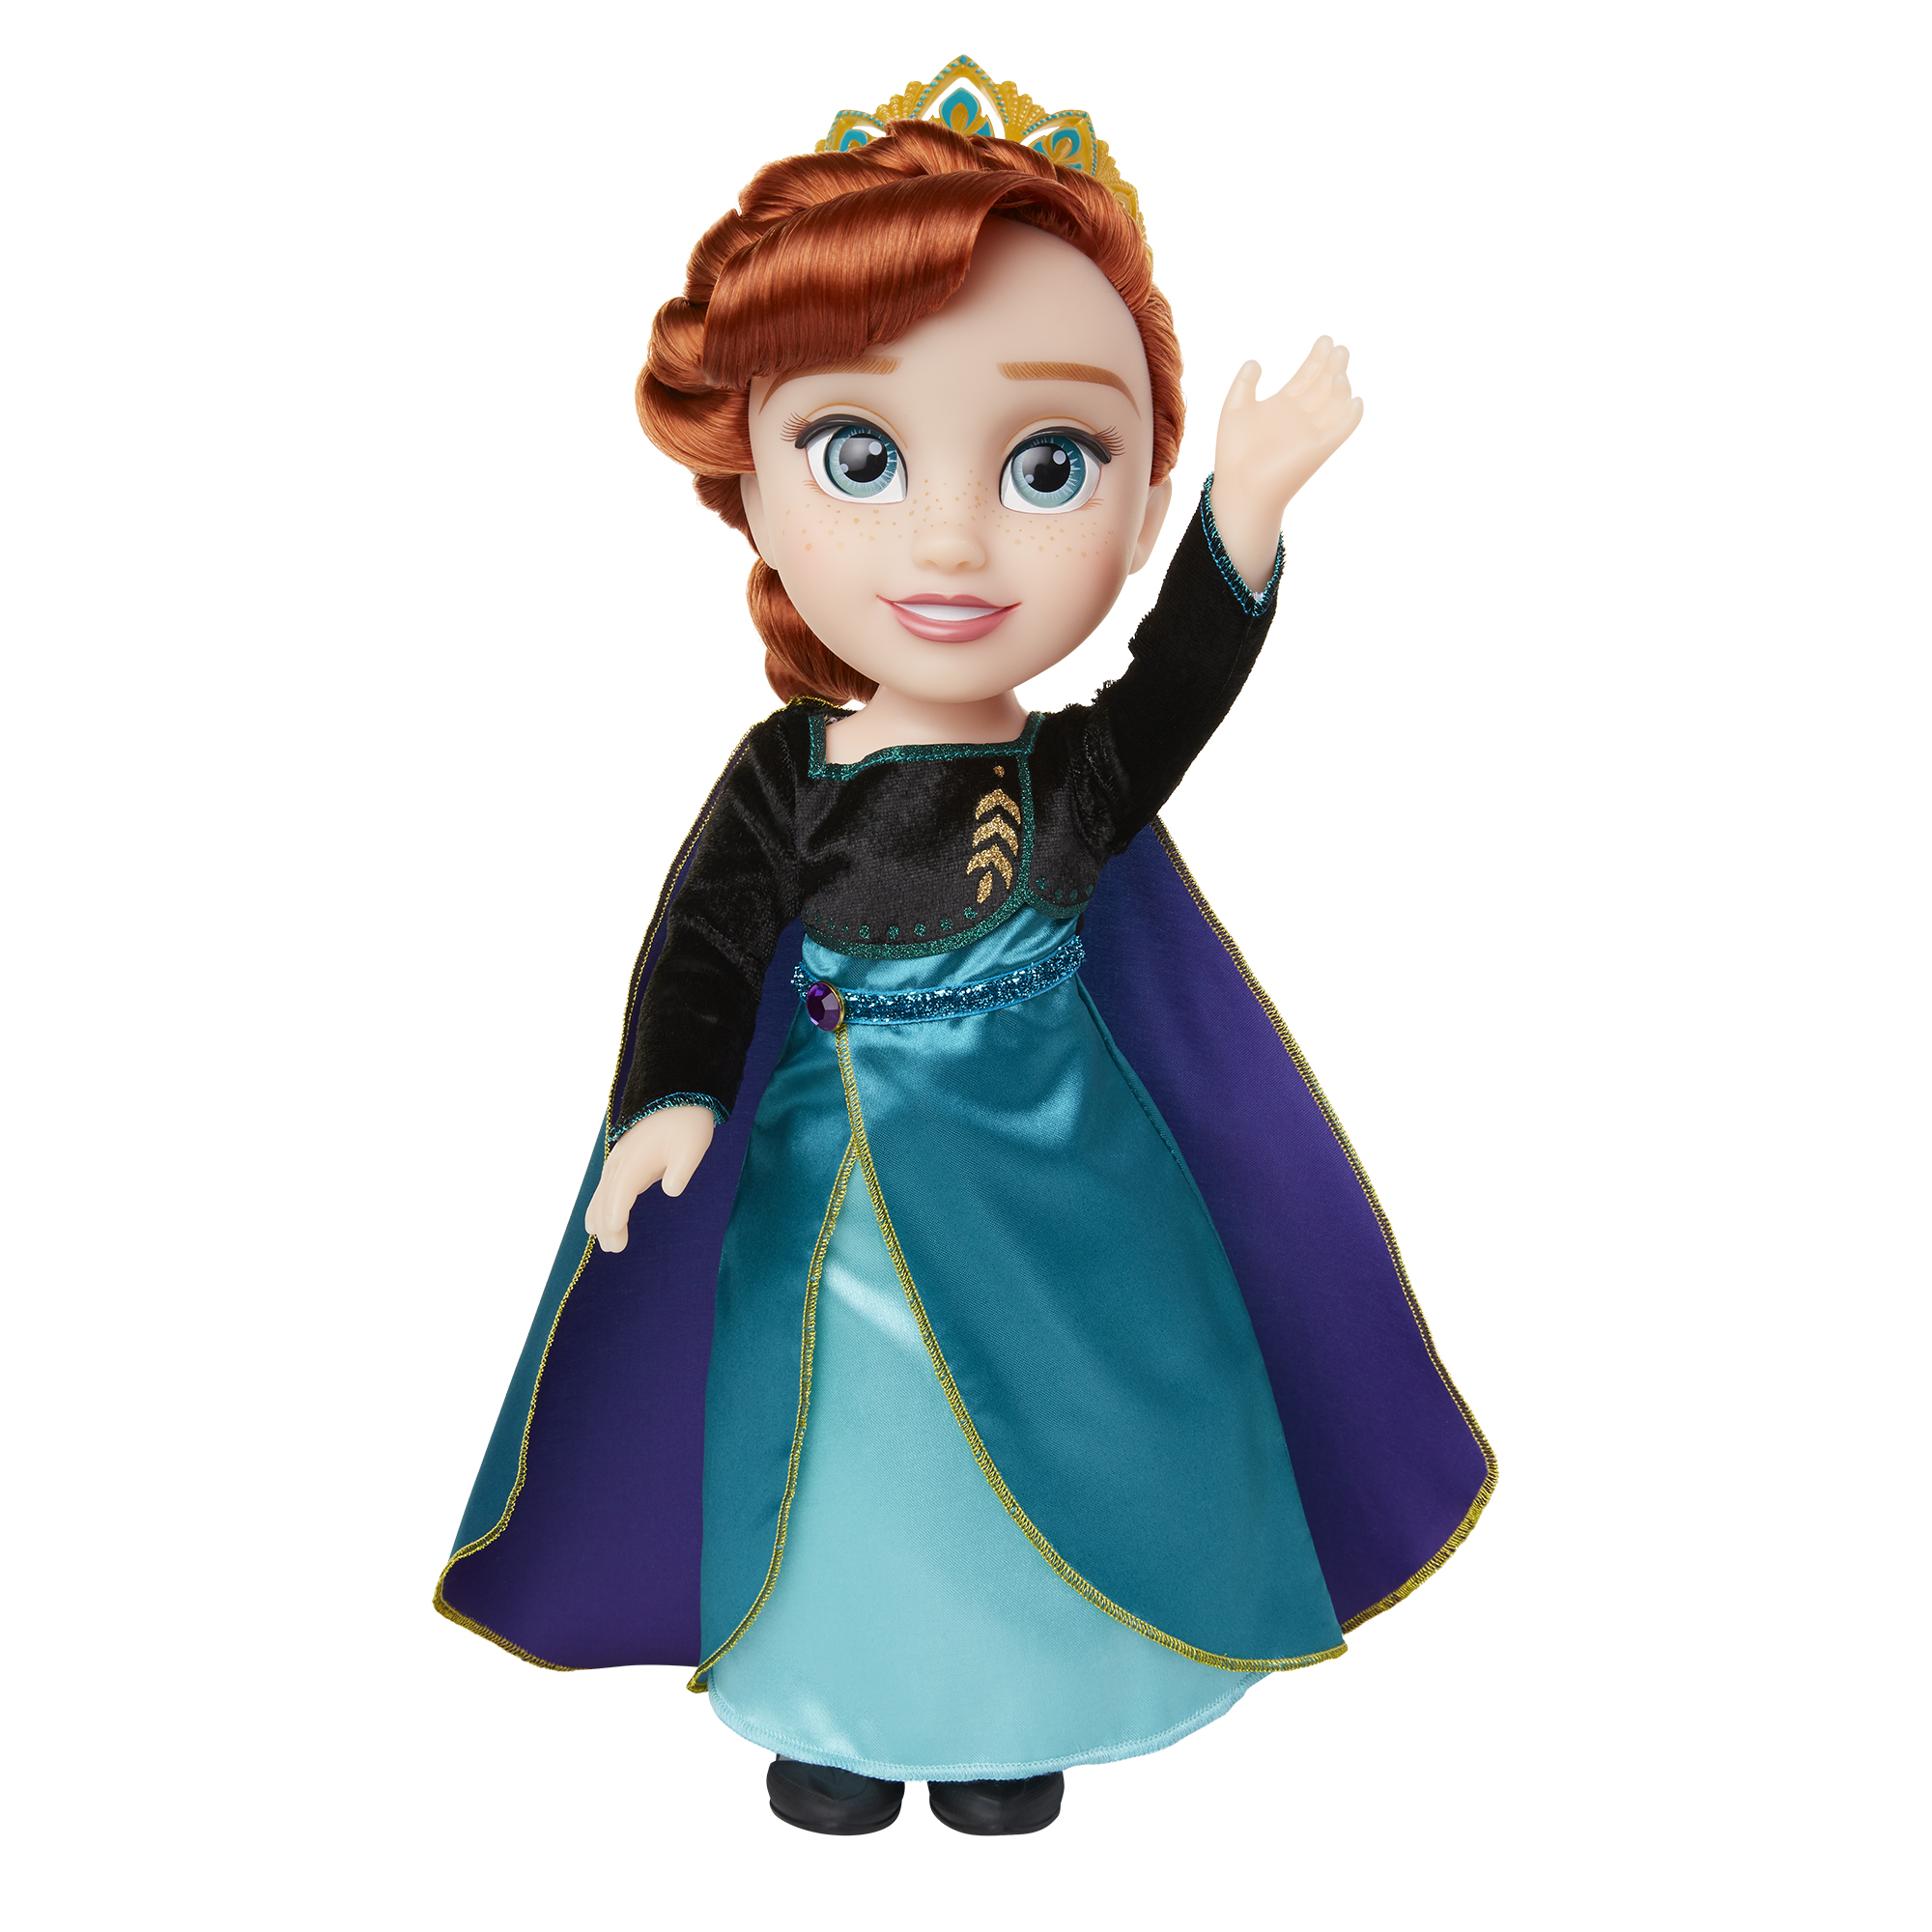 Queen Anna Doll - JAKKS Pacific, Inc.